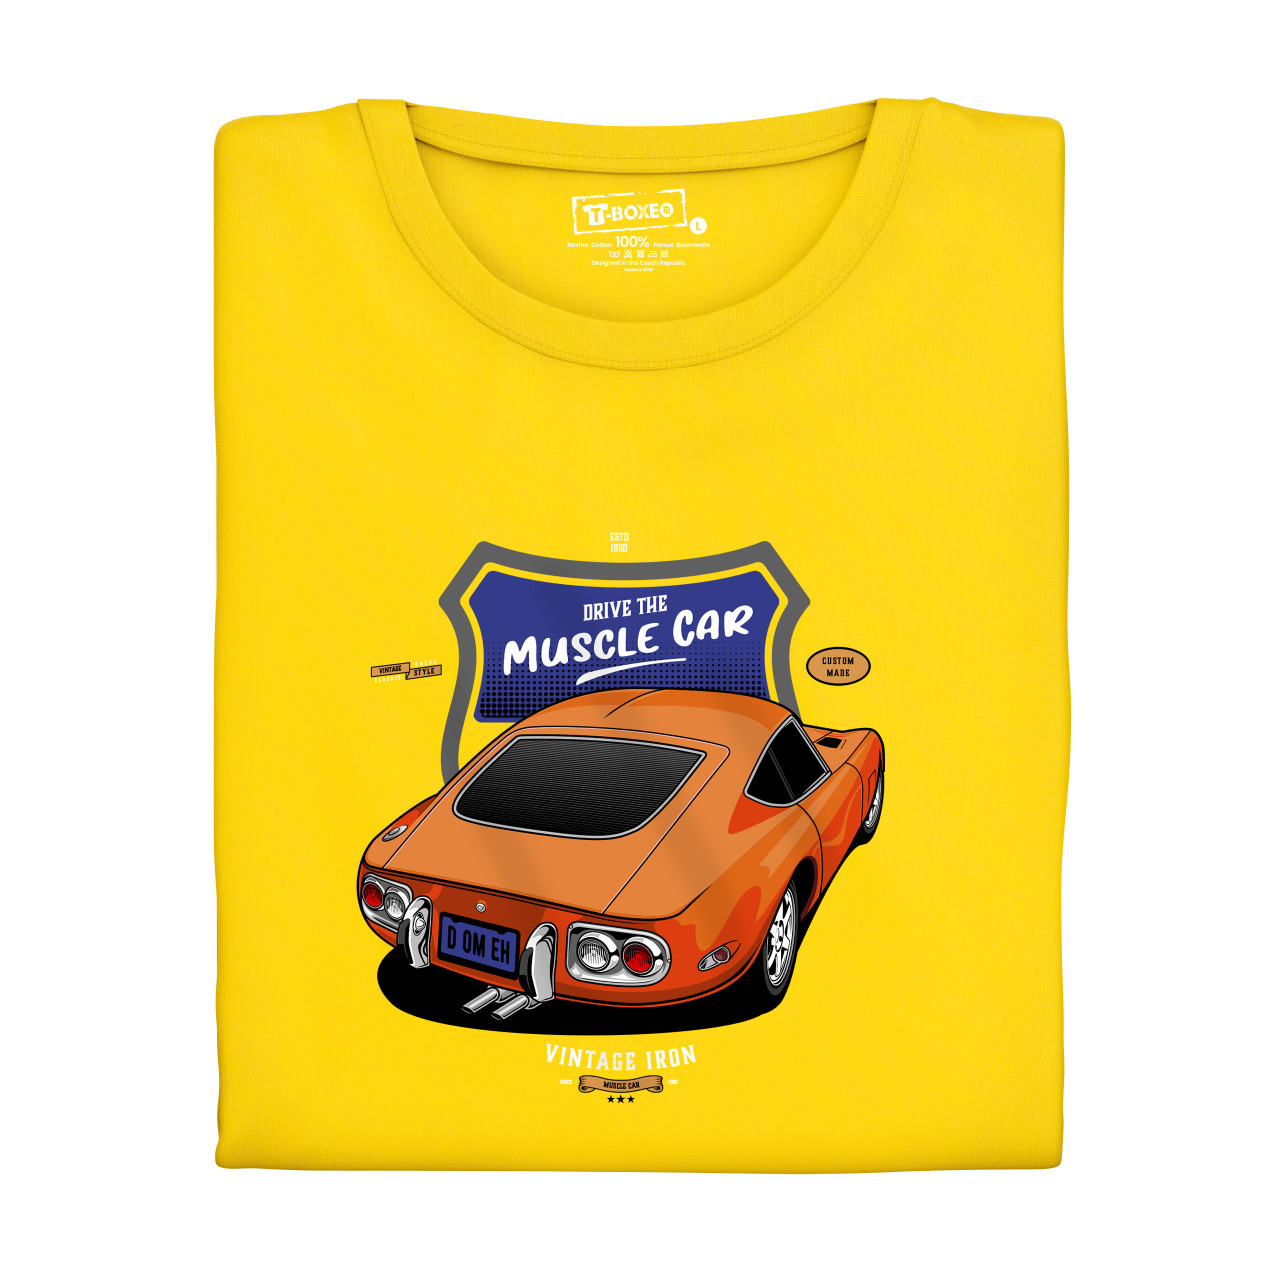 Pánské tričko s potiskem “Ride the Muscle Car"